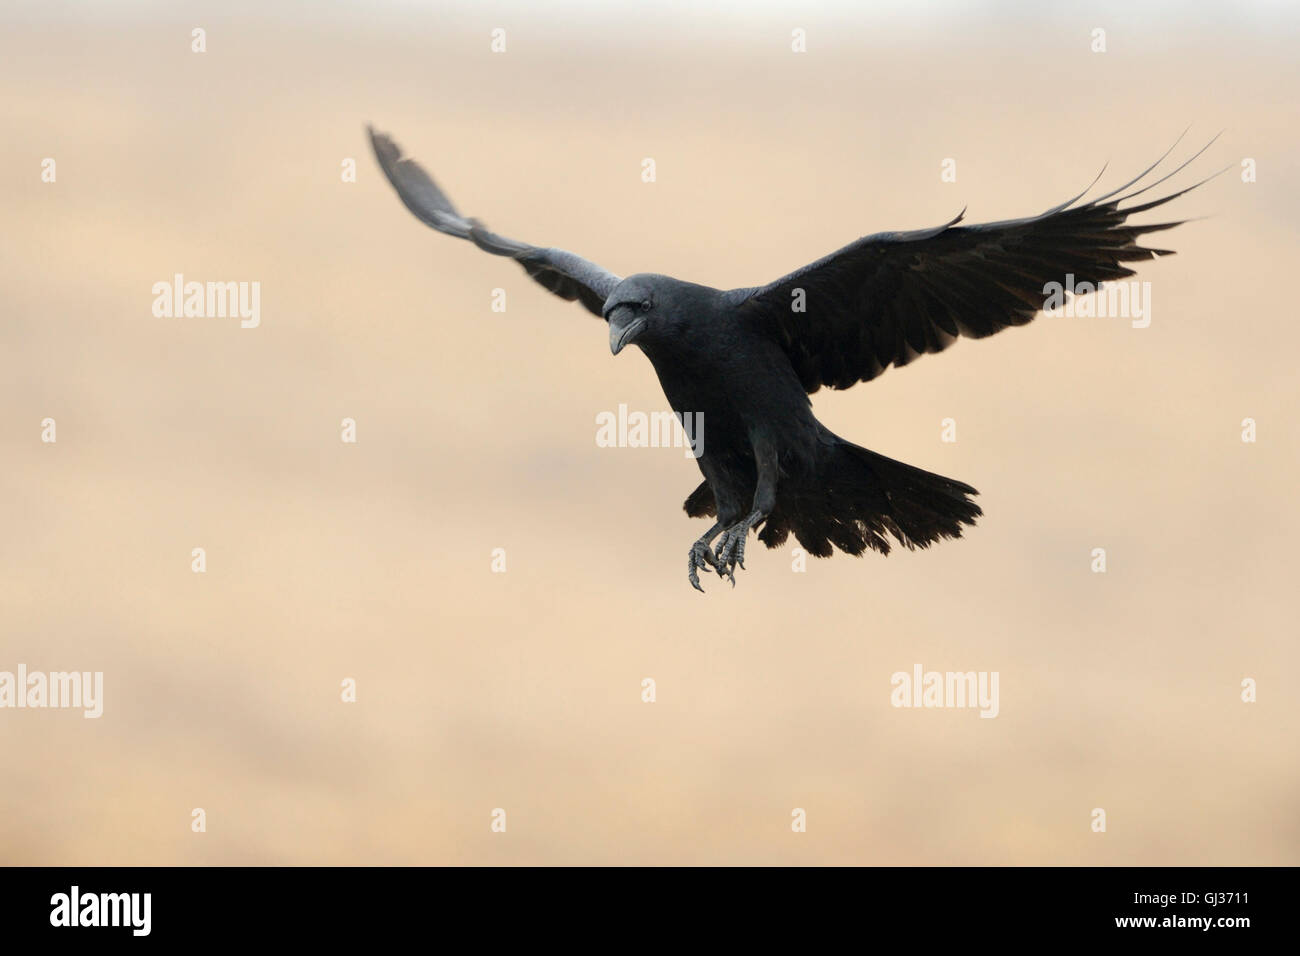 Comune enorme Raven / Kolkrabe ( Corvus corax ) in volo con ampie ali aperte nella parte anteriore di una bella e pulita sfondo colorato. Foto Stock